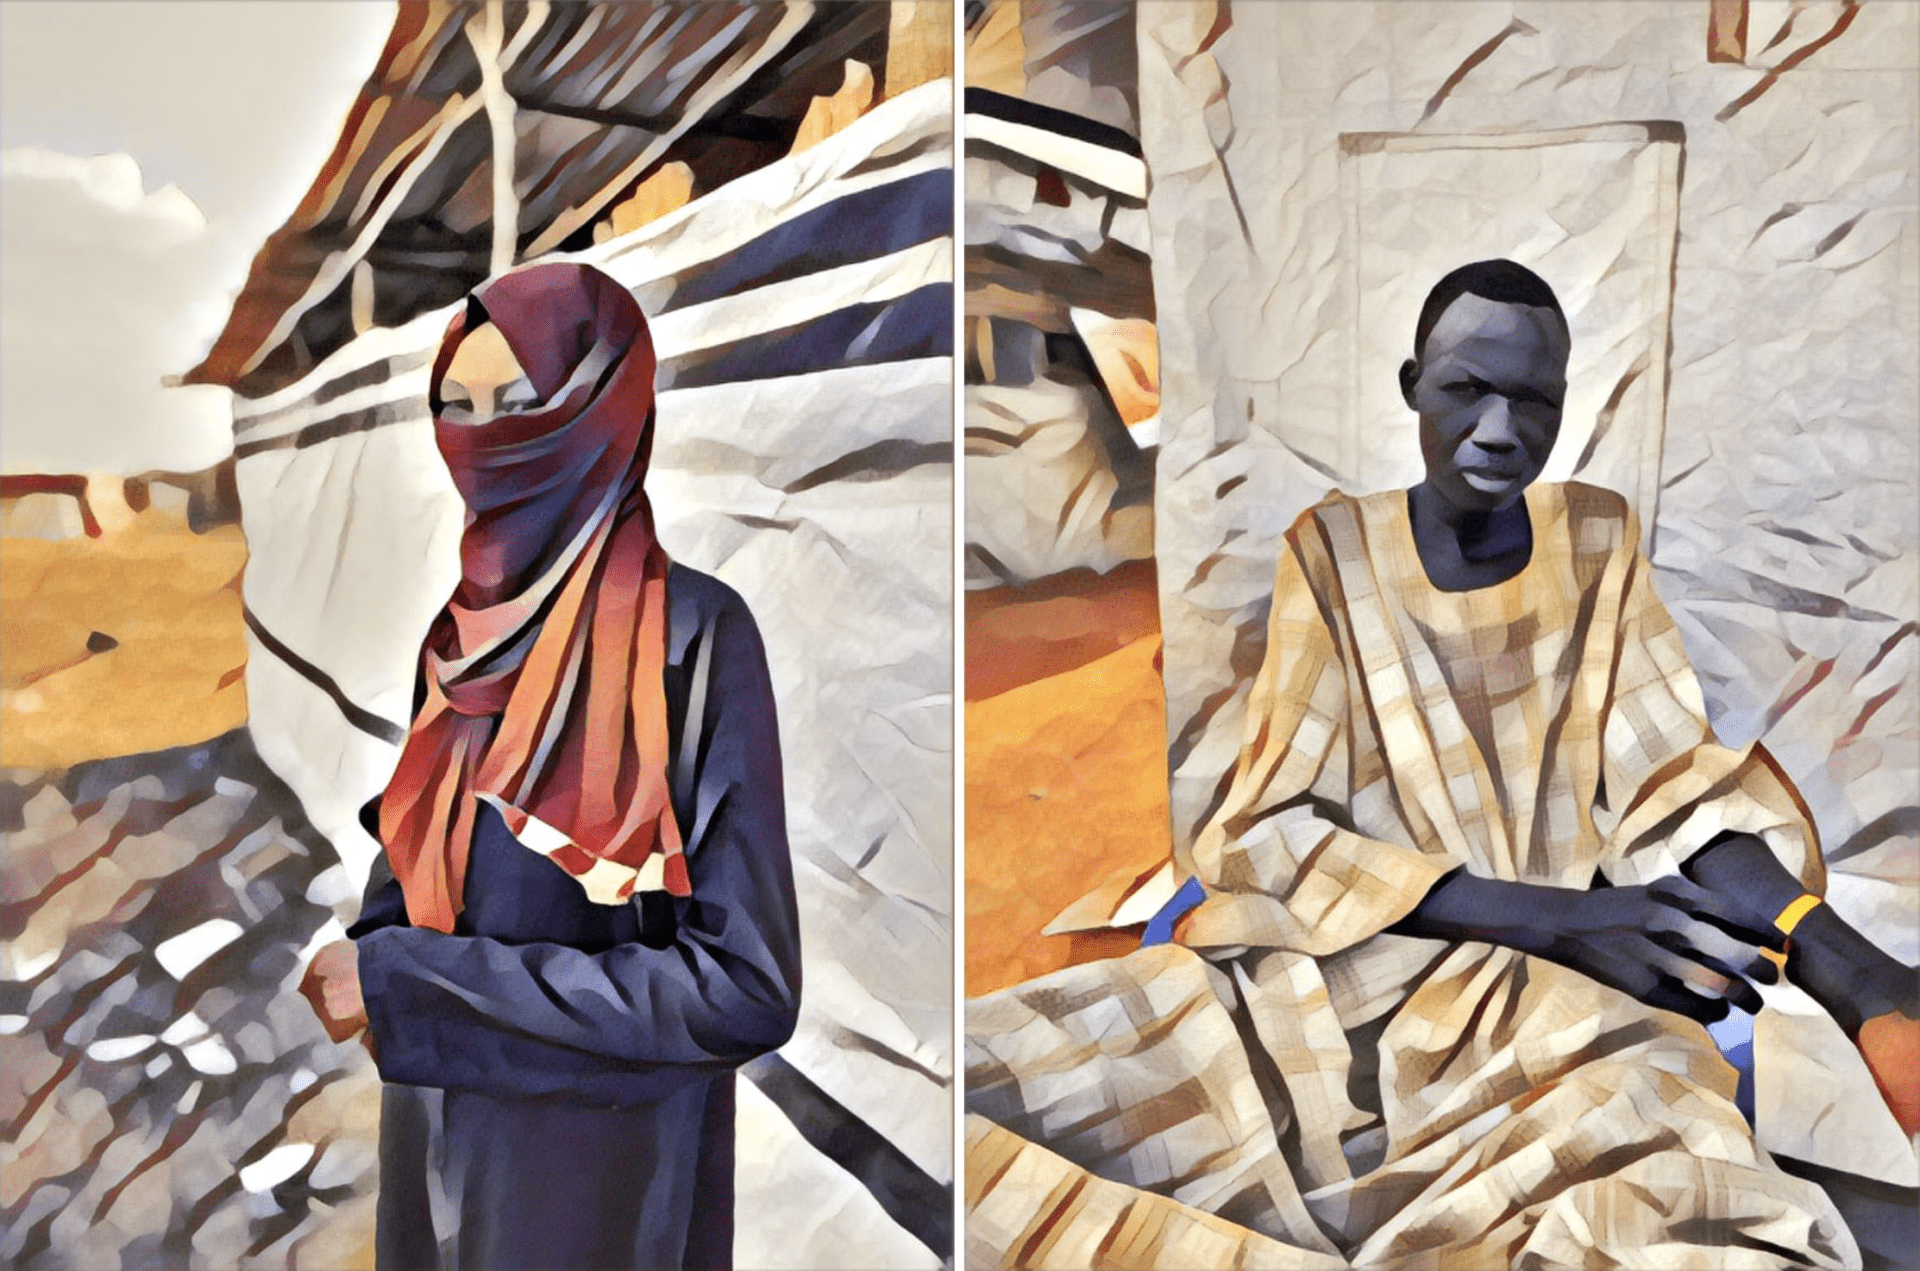 Illustration à partir de photographies de MSF. Portrait d'une jeune Soudanaise ayant fui les combats, Soudan, mars 2024 (gauche). Portrait d'un jeune garçon blessé dans le bombardement d'un entrepôt à Khartoum, Soudan, mars 2024 (droite).